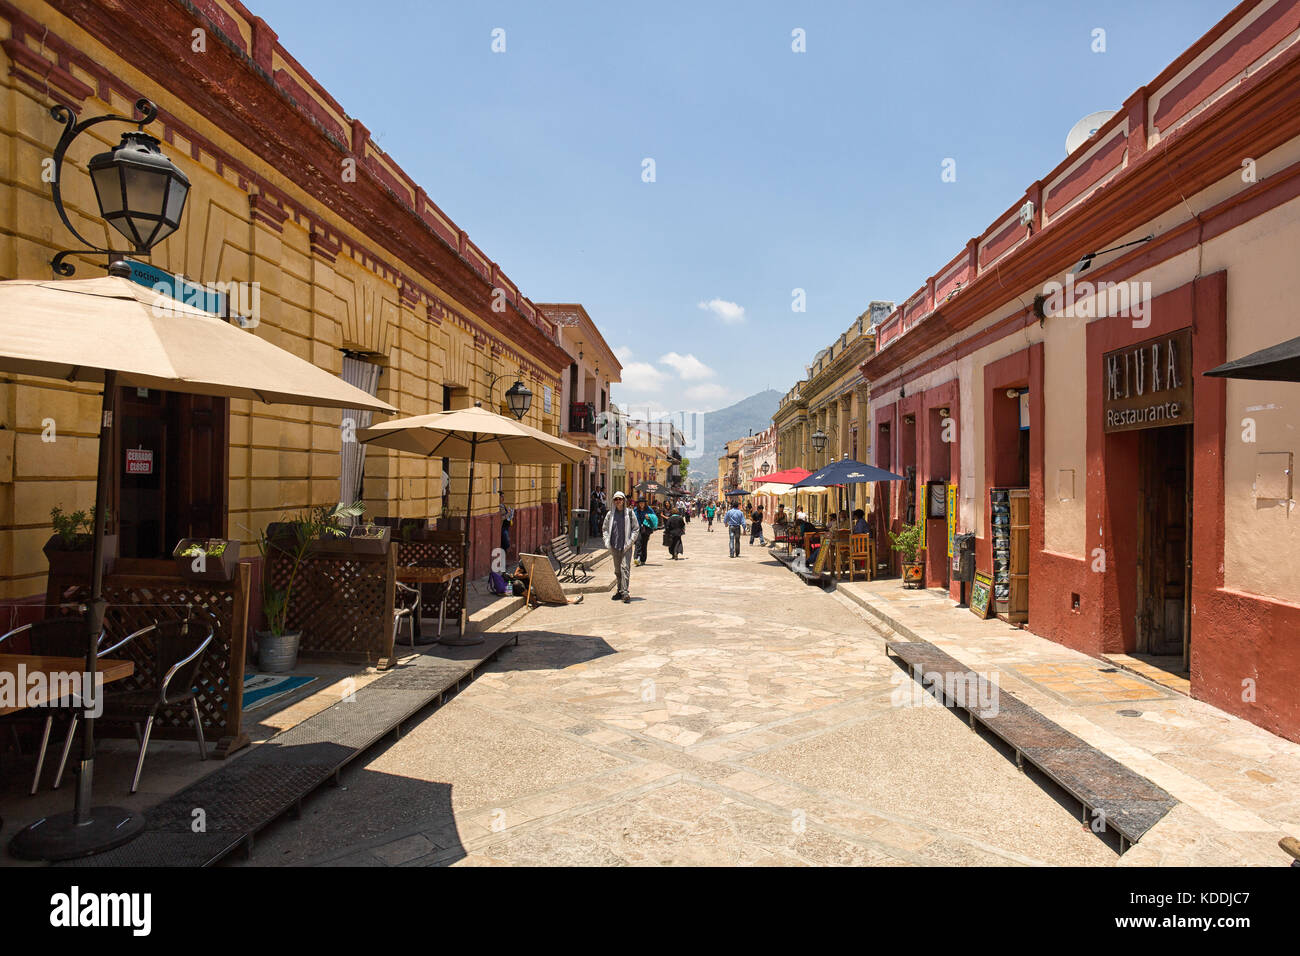 April 14, 2014 San Cristobal de las Casas, Mexico: Stock Photo